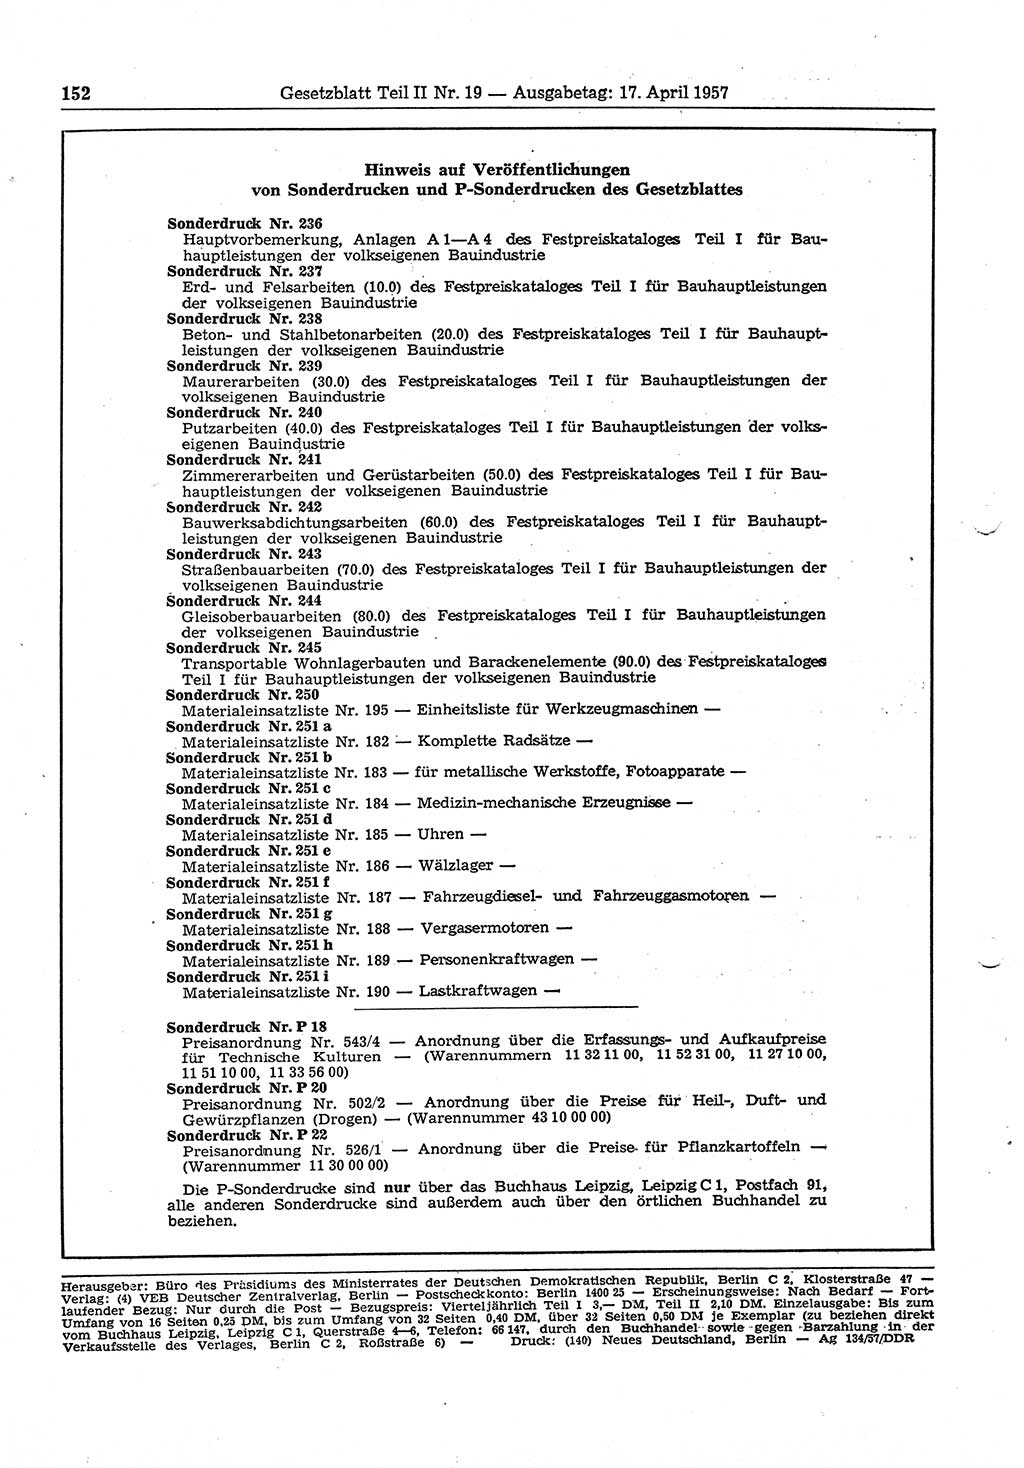 Gesetzblatt (GBl.) der Deutschen Demokratischen Republik (DDR) Teil ⅠⅠ 1957, Seite 152 (GBl. DDR ⅠⅠ 1957, S. 152)